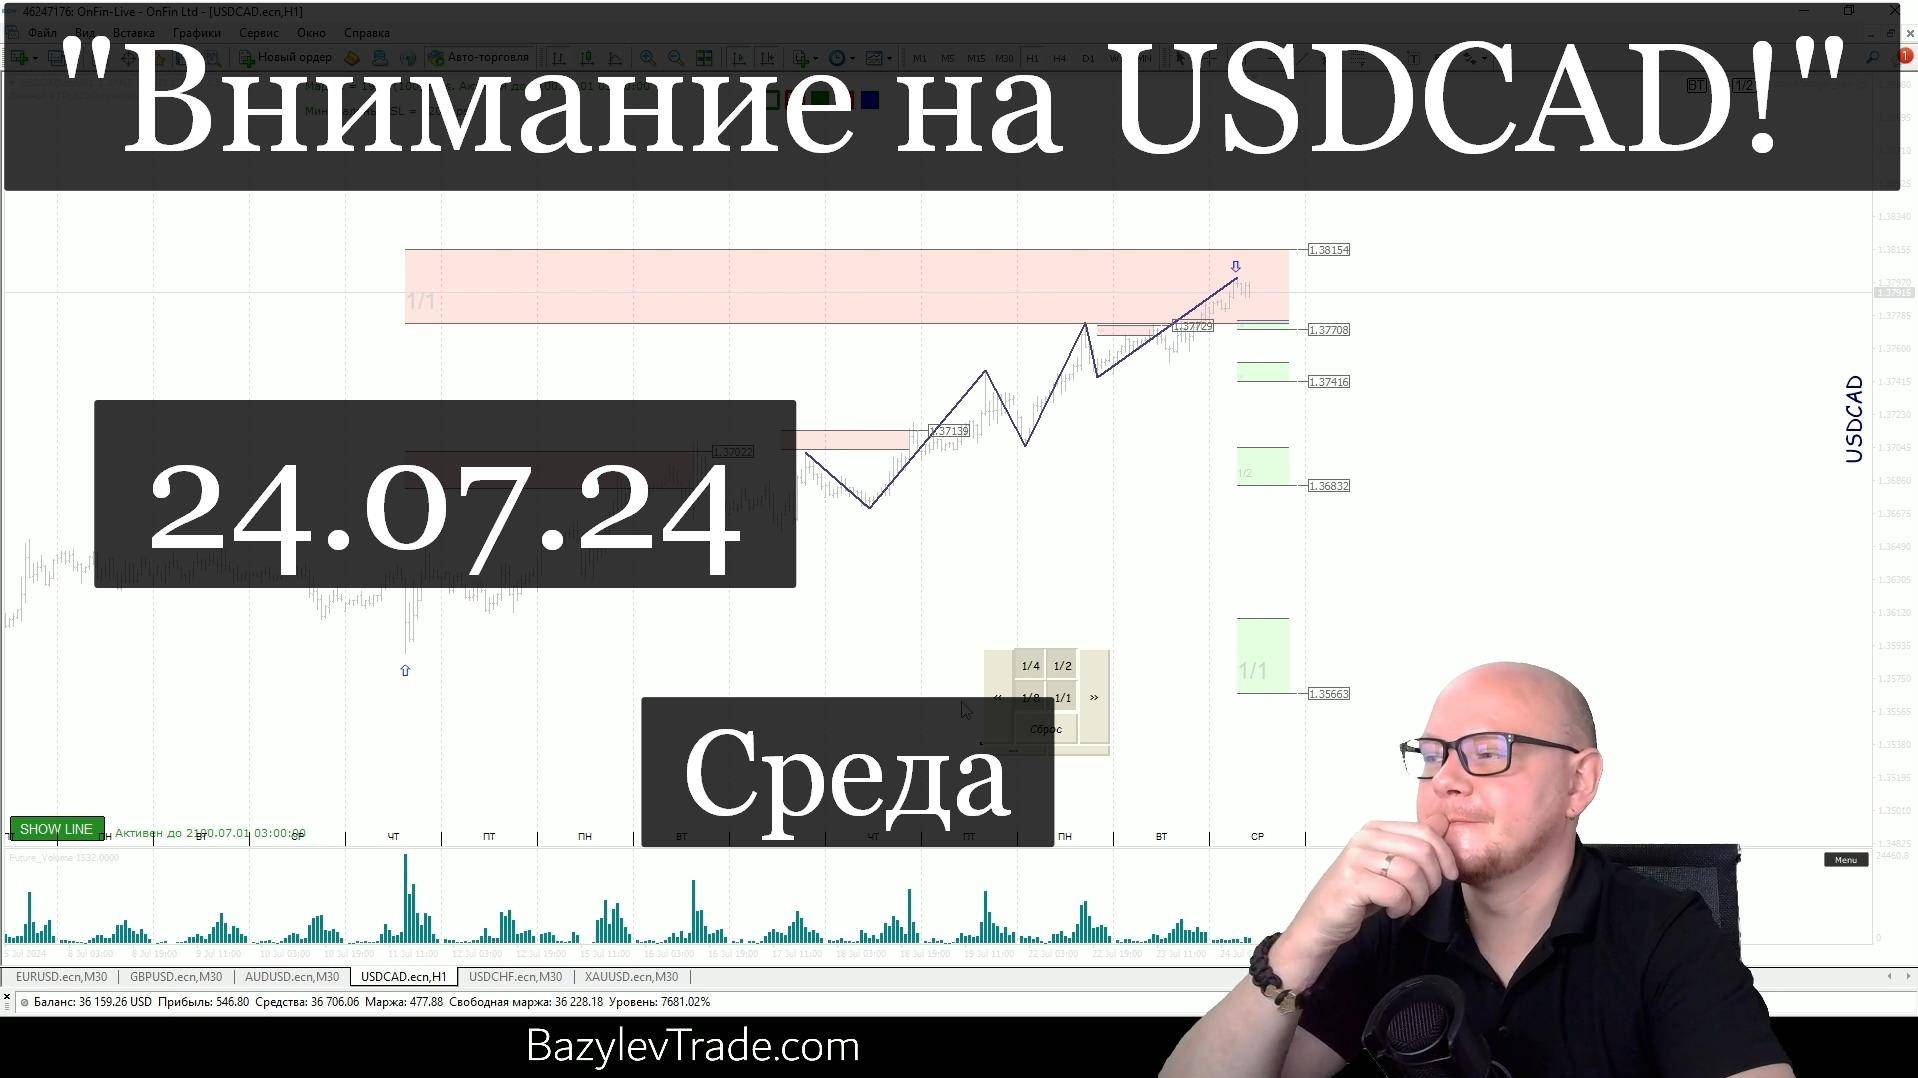 "Внимание на USDCAD!" «Обзор рынка Форекс от Александра Базылева»